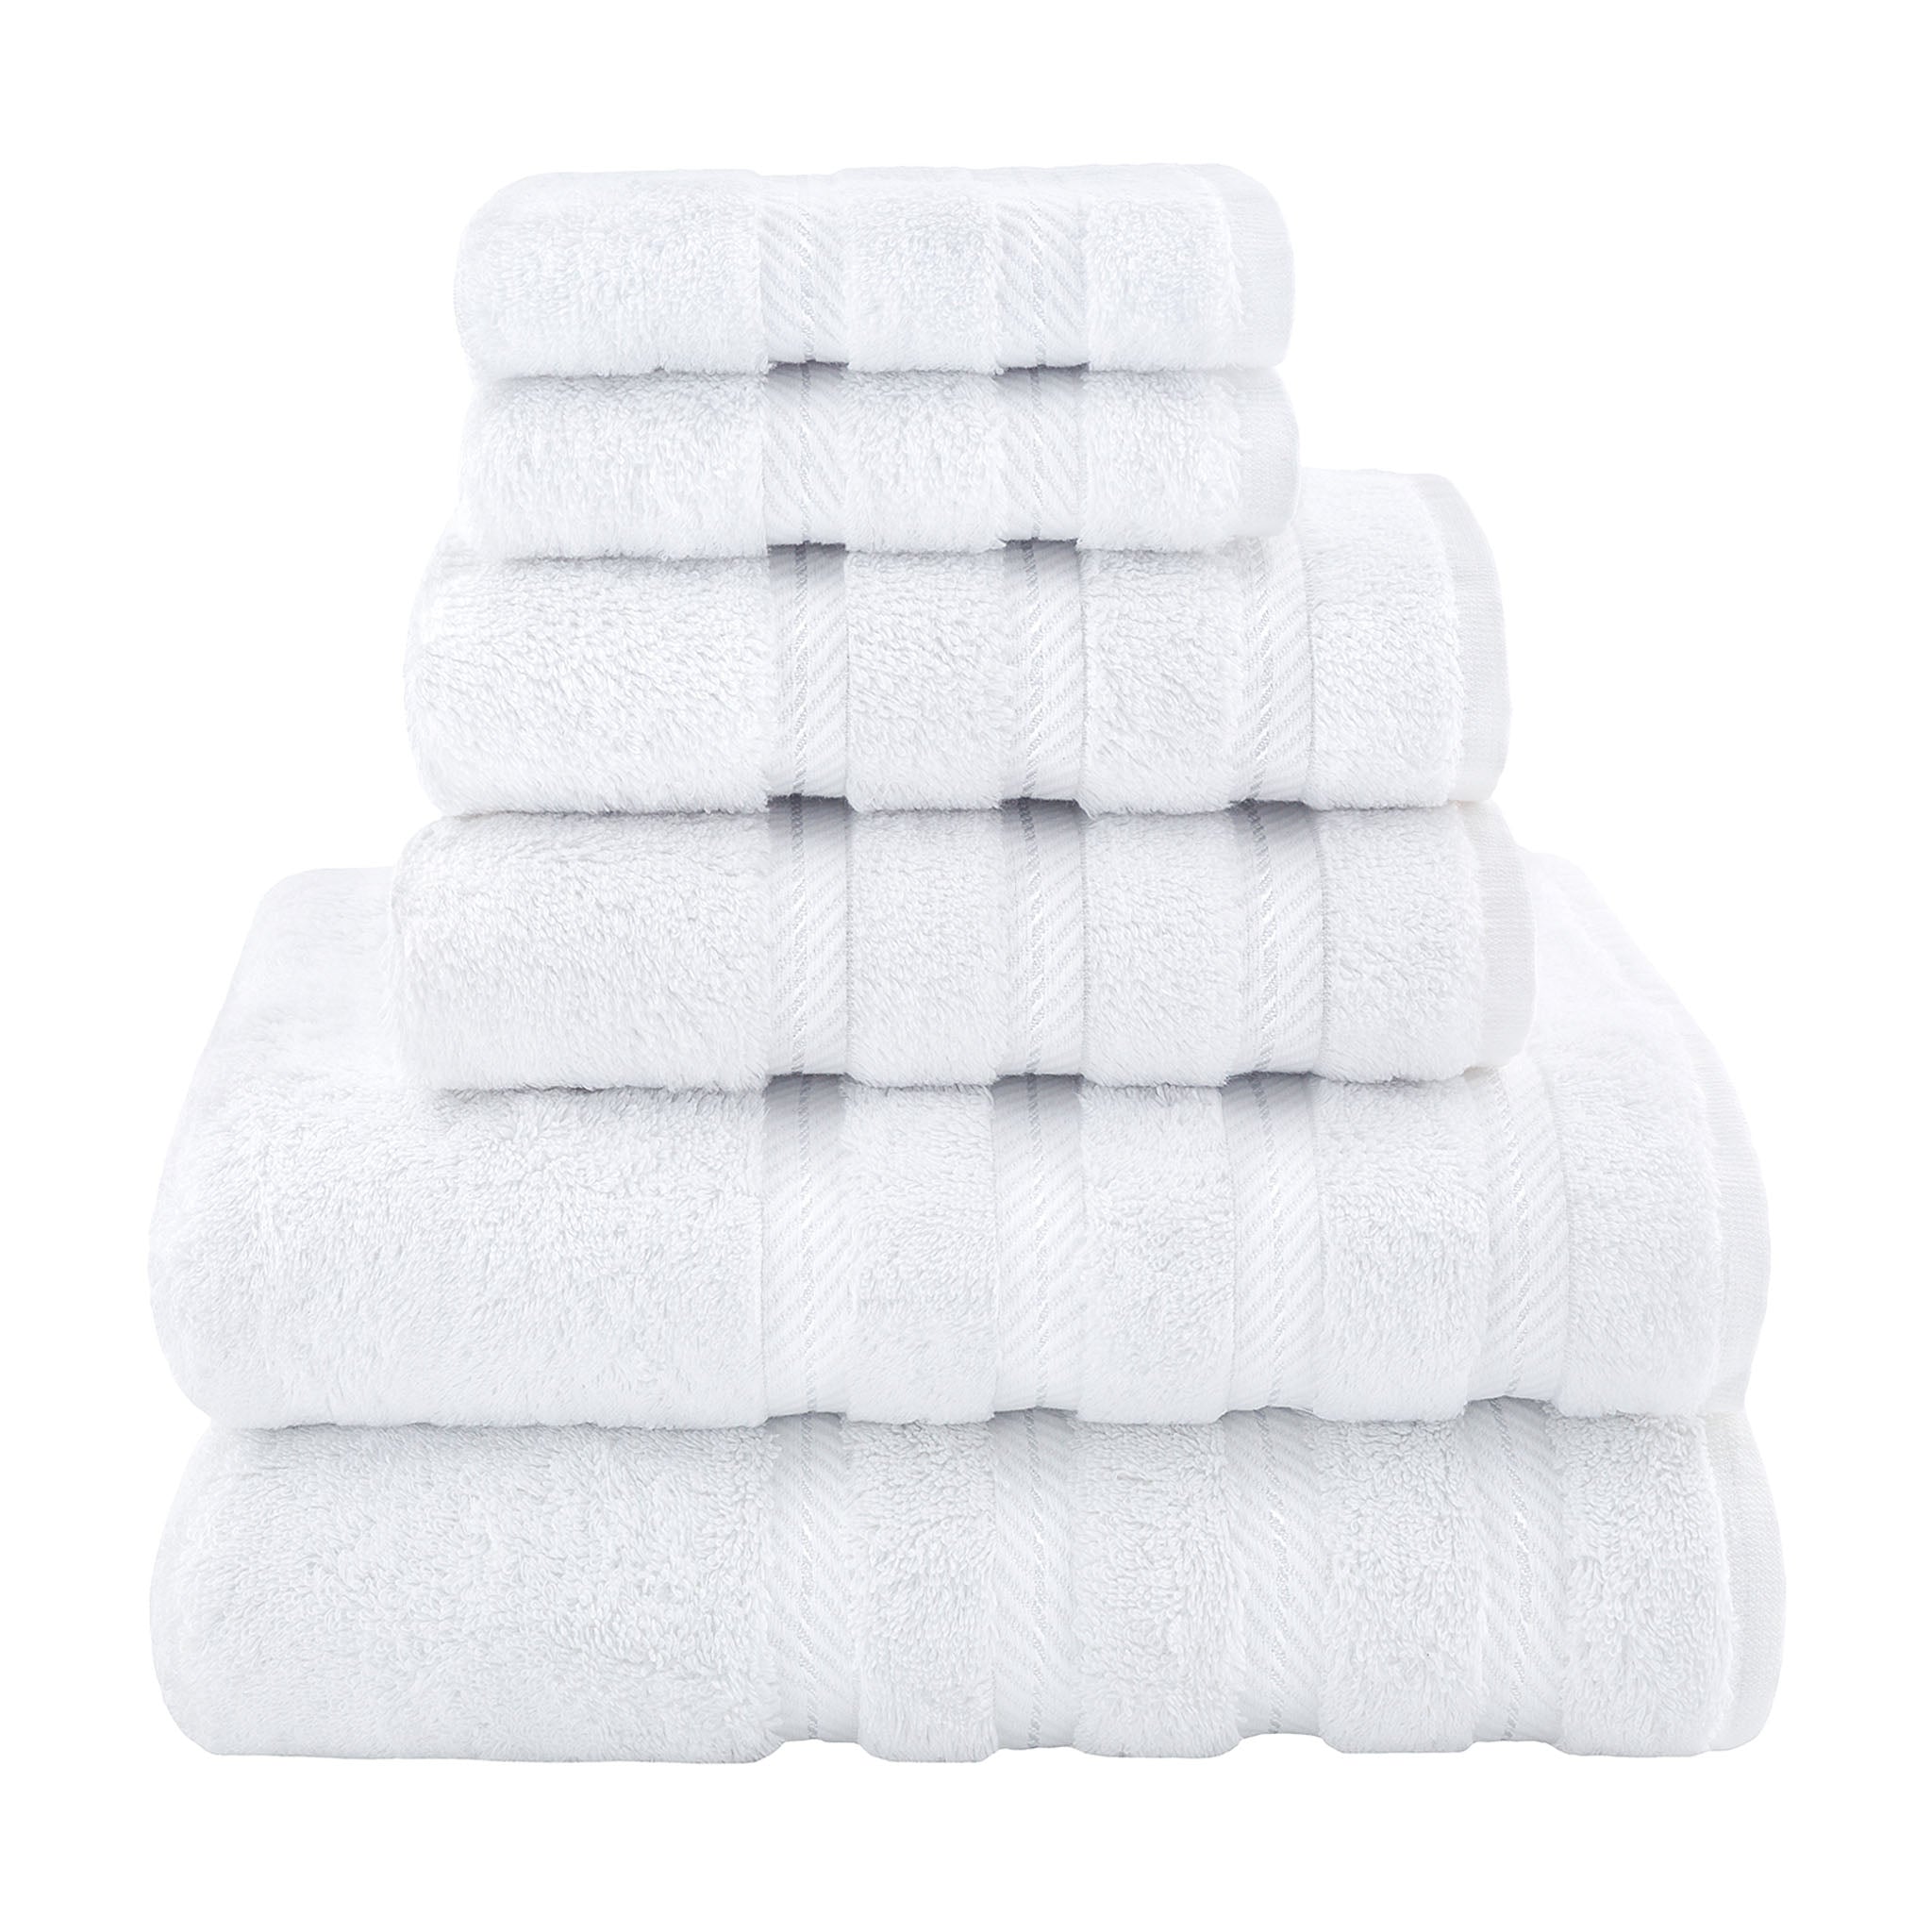 American Soft Linen 100% Turkish Cotton 6 Piece Towel Set Wholesale white-1